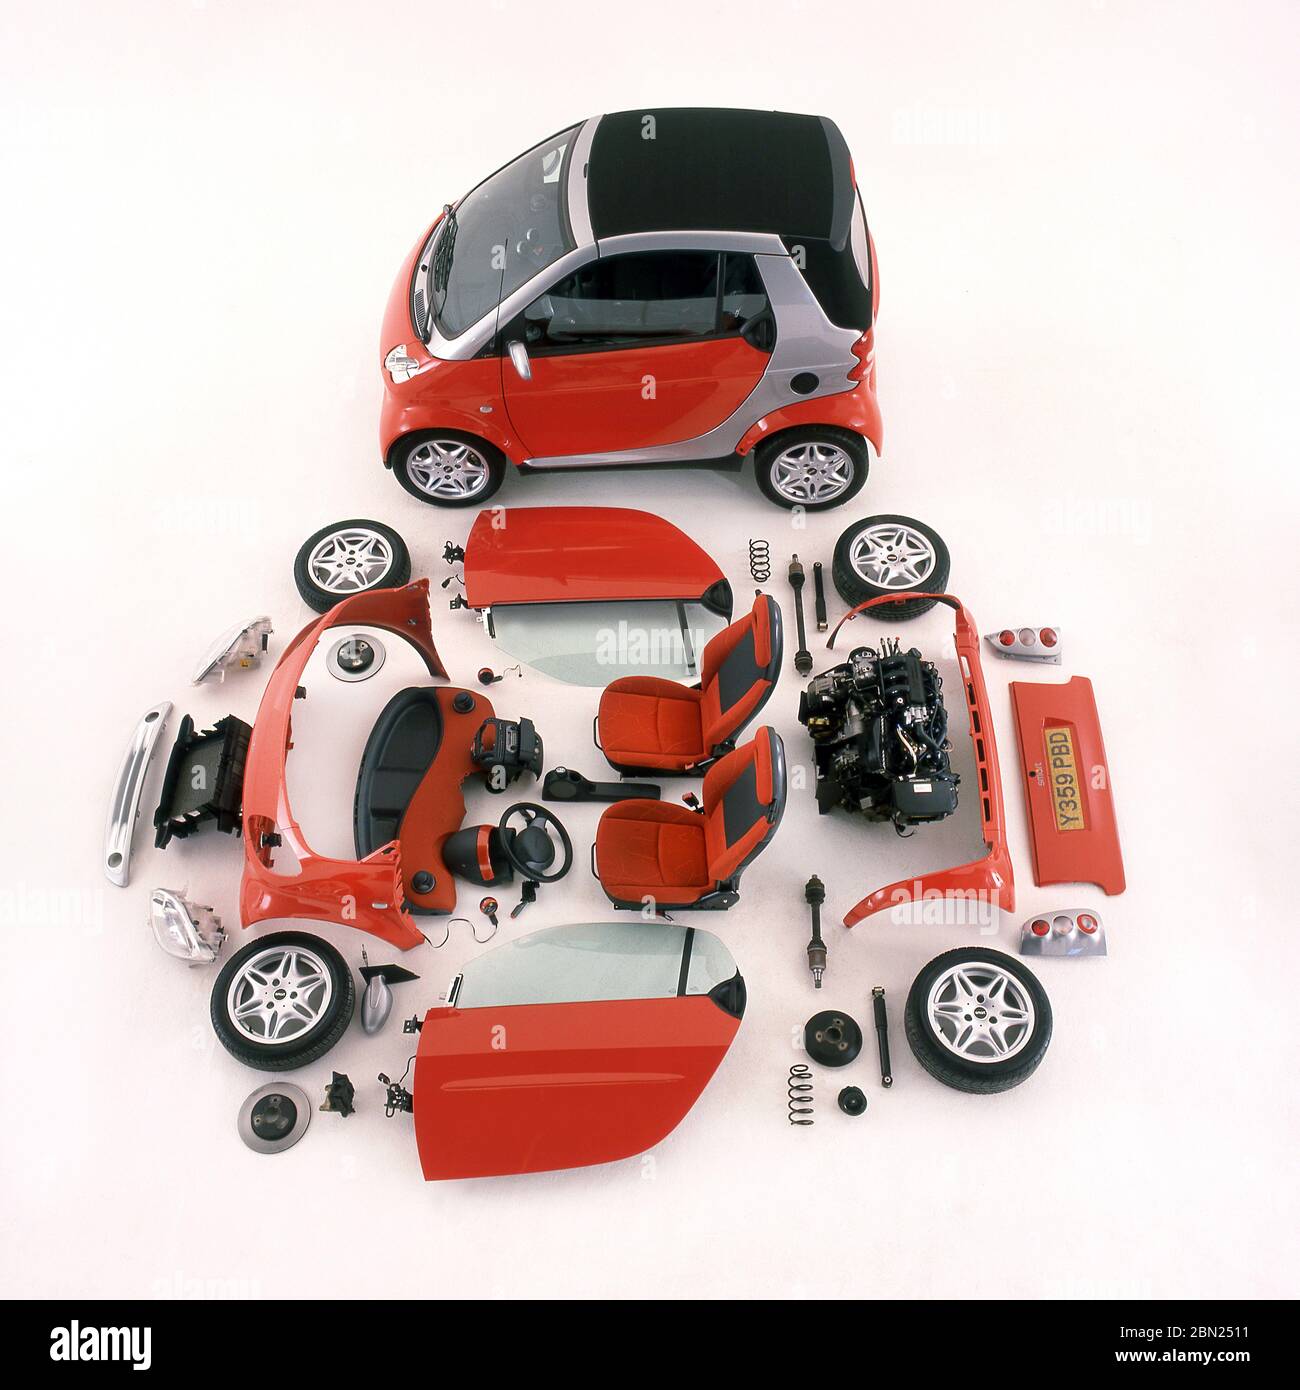 2001 Smart zwei Autos und Komponenten, die das Fahrzeug auf dem Display ausgelegt. Stockfoto